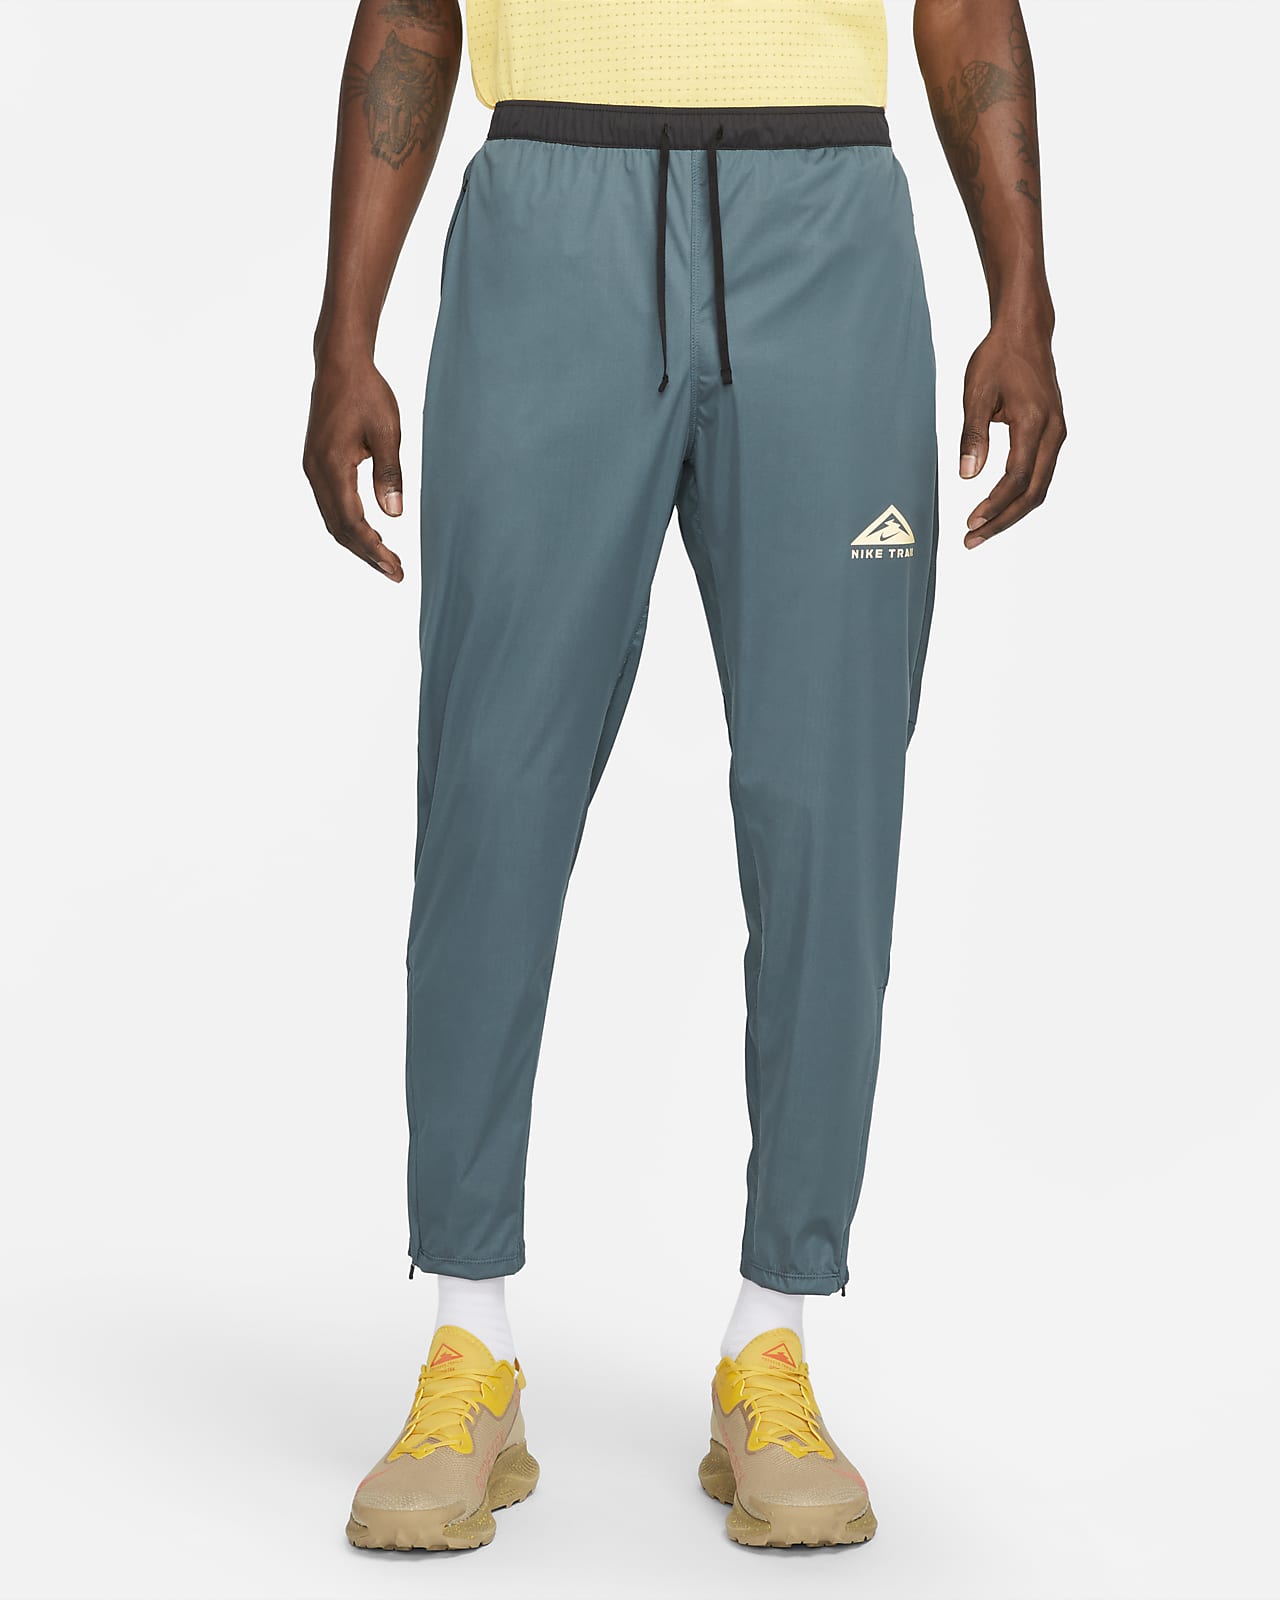 Dri-FIT Phenom Elite Men's Knit Pants. Nike.com